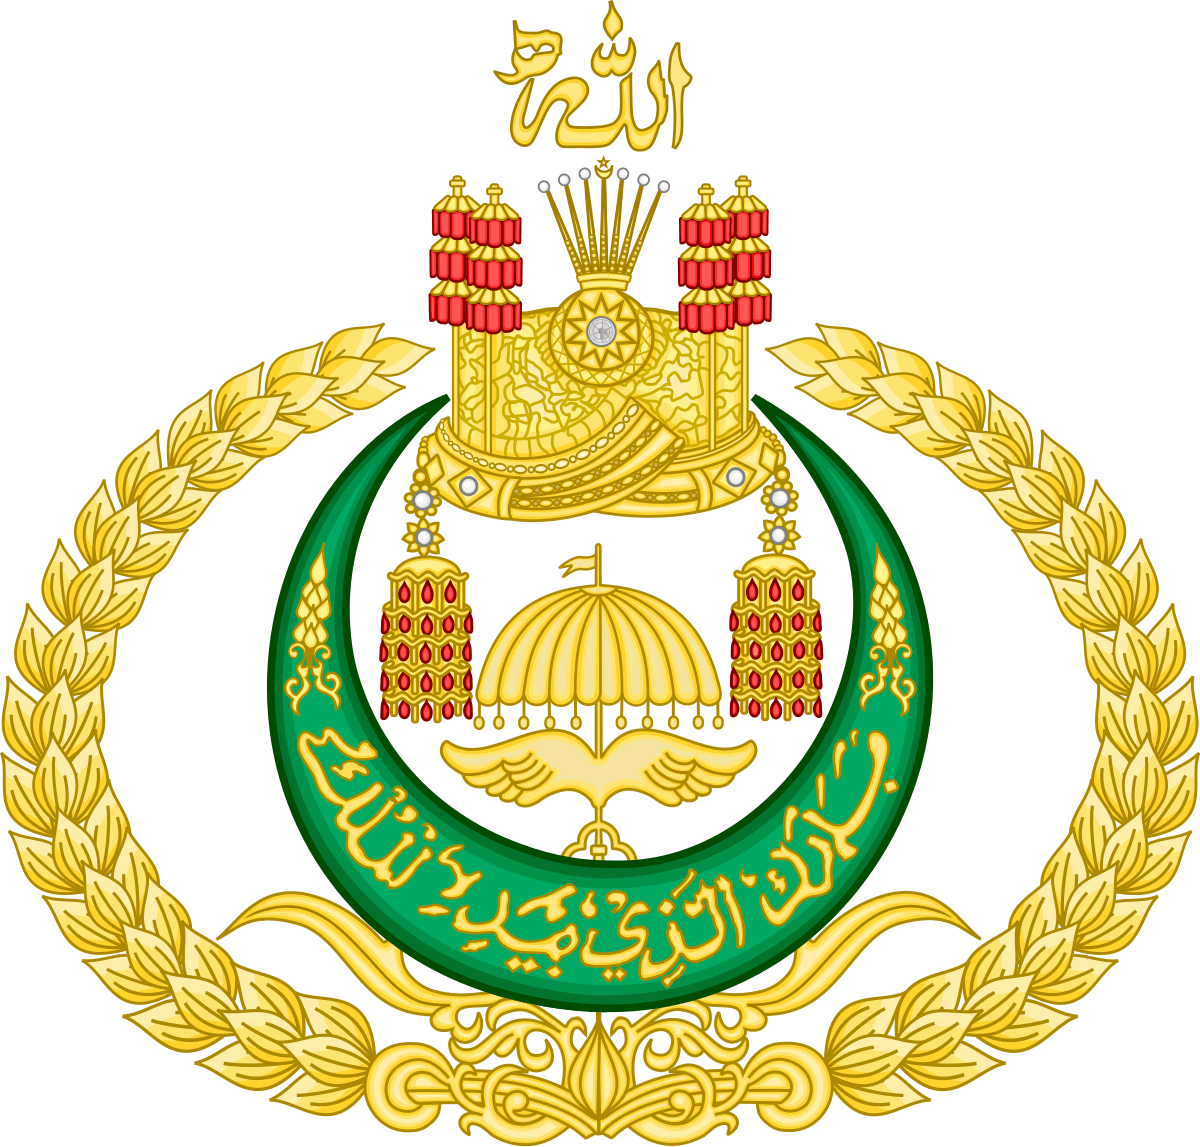 Brunei Logo - List of Sultans of Brunei